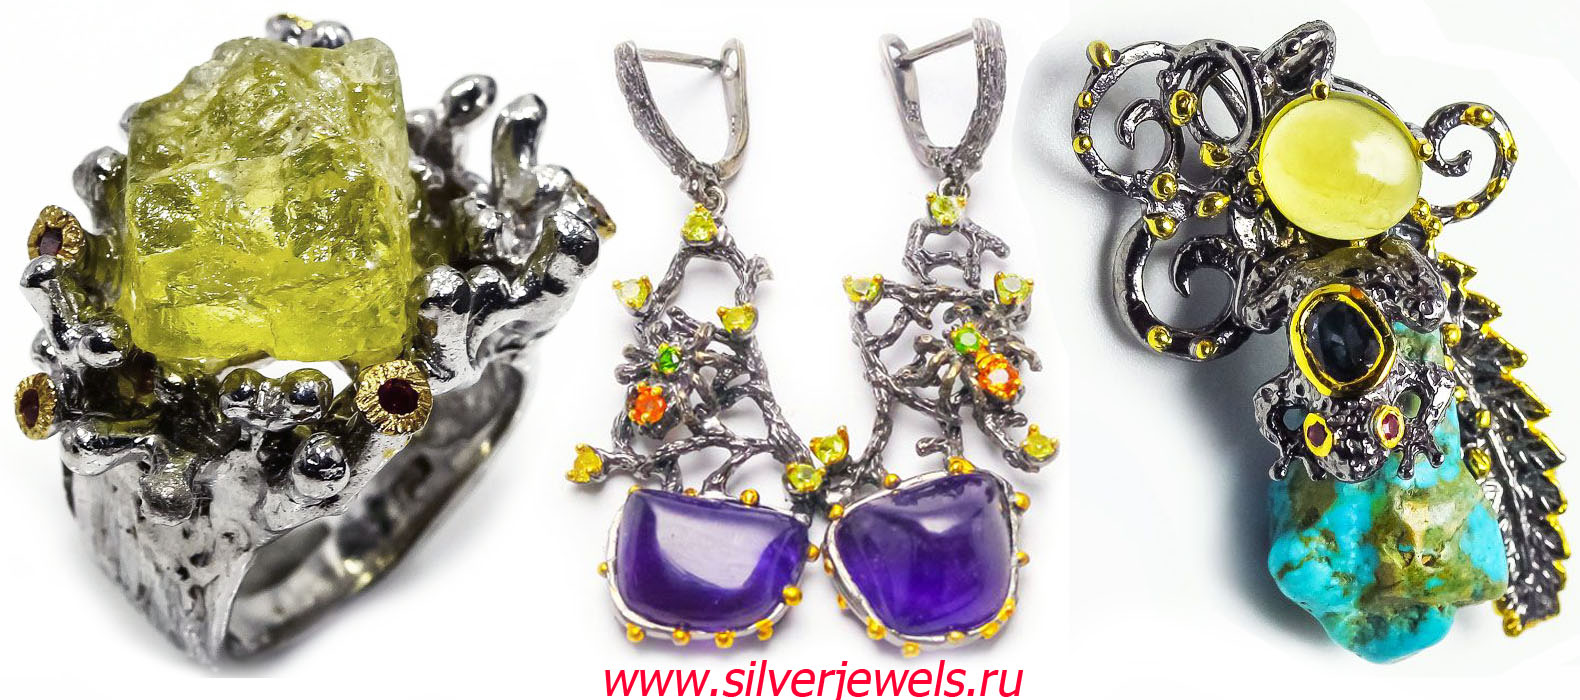 серебряные украшения silverjewels.ru ручная работа